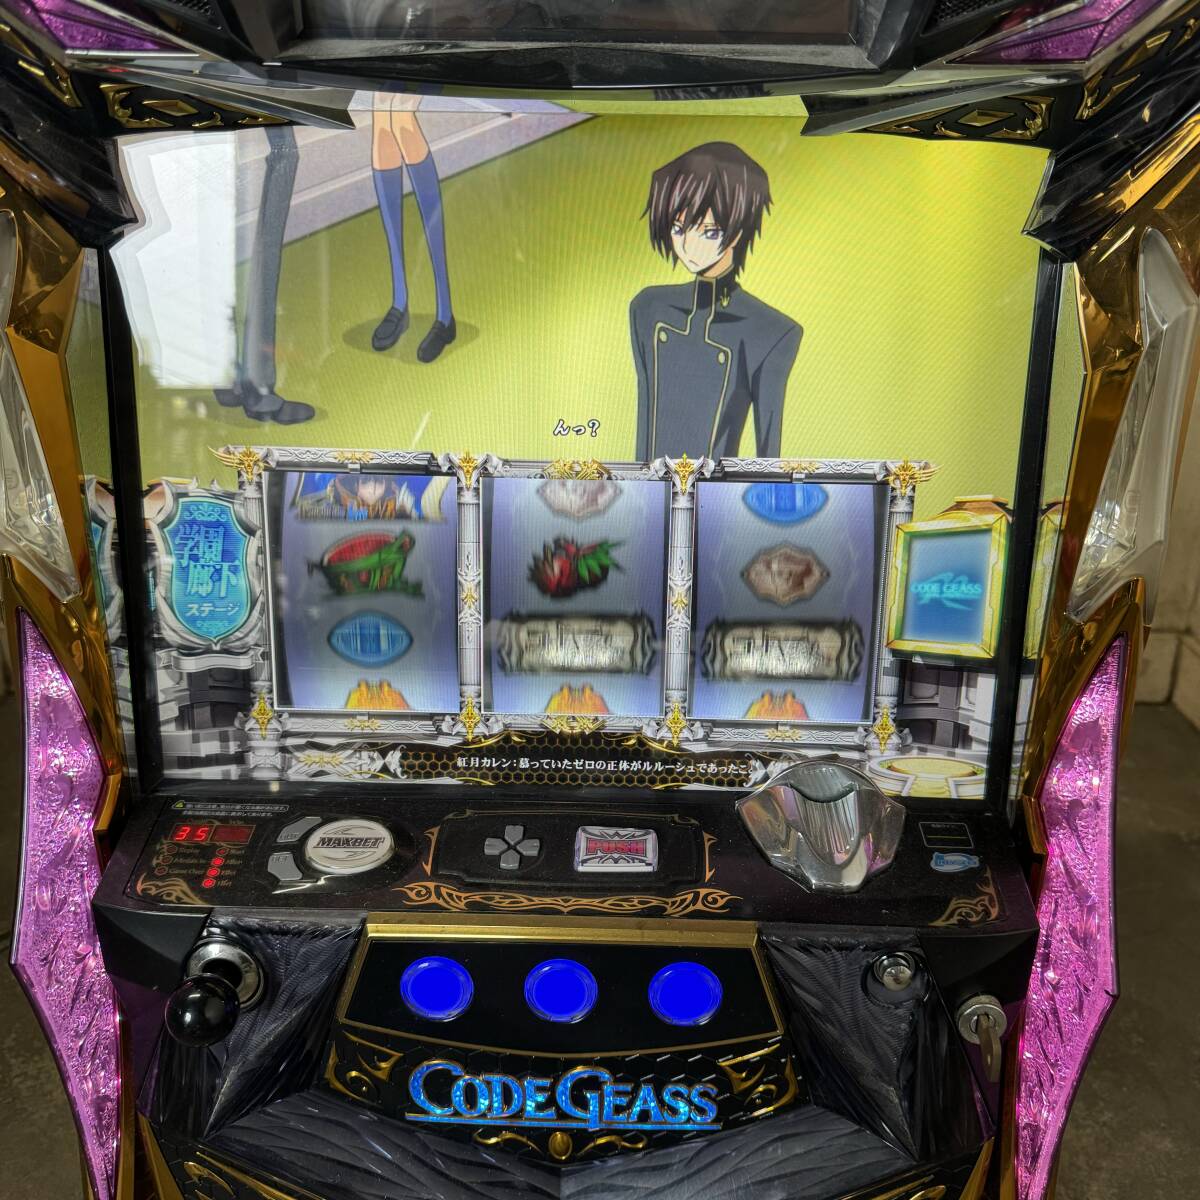 * Gifu departure игровой автомат /sami-/ Code Geas / дверь ключ установка ключ есть / не необходимо машина /..OK / текущее состояние товар R6.4/30*